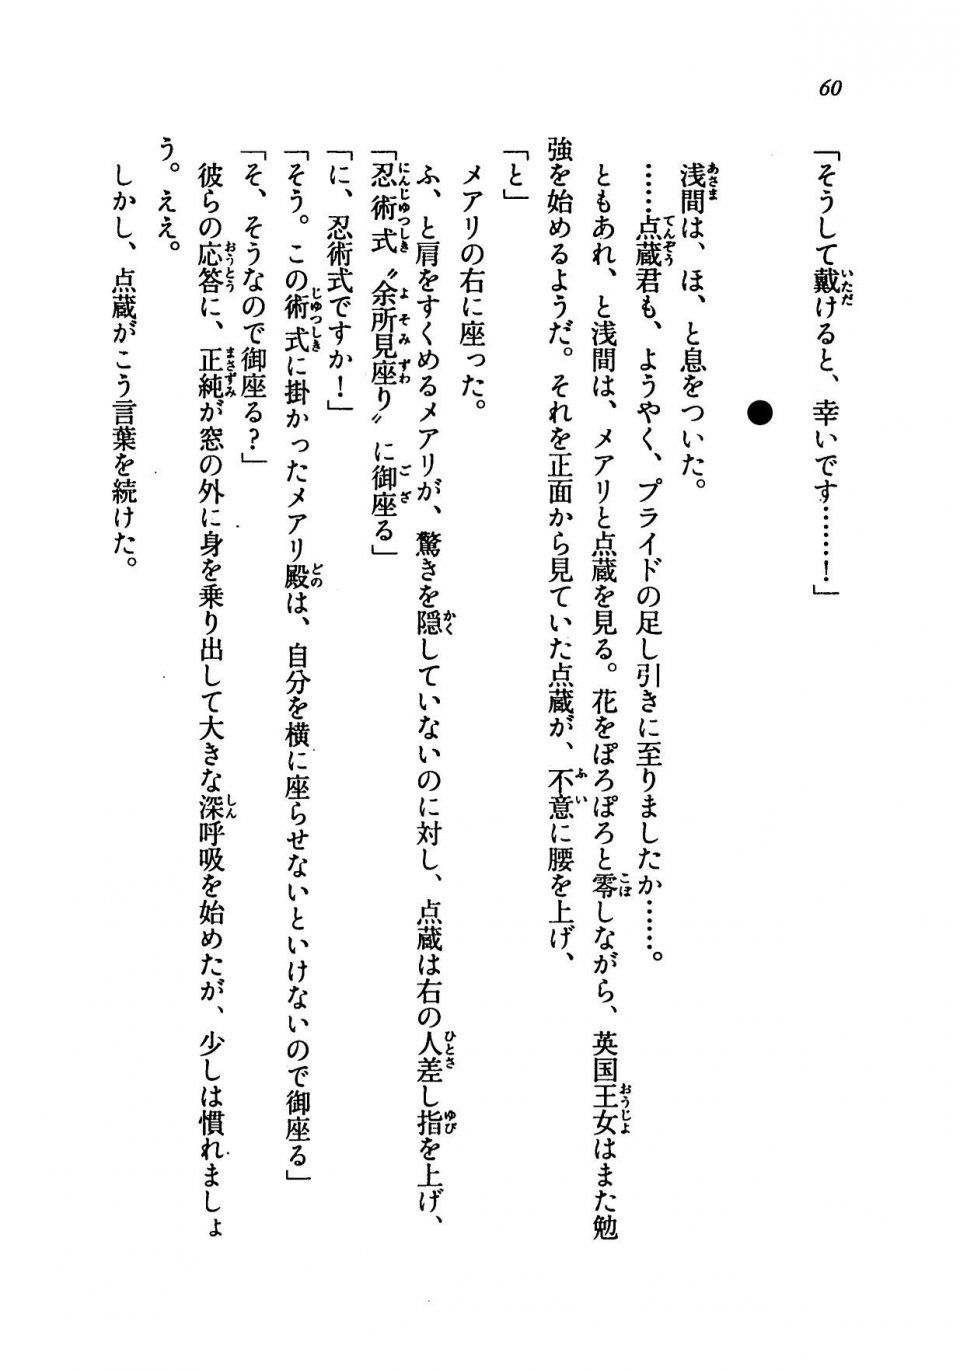 Kyoukai Senjou no Horizon LN Vol 19(8A) - Photo #60